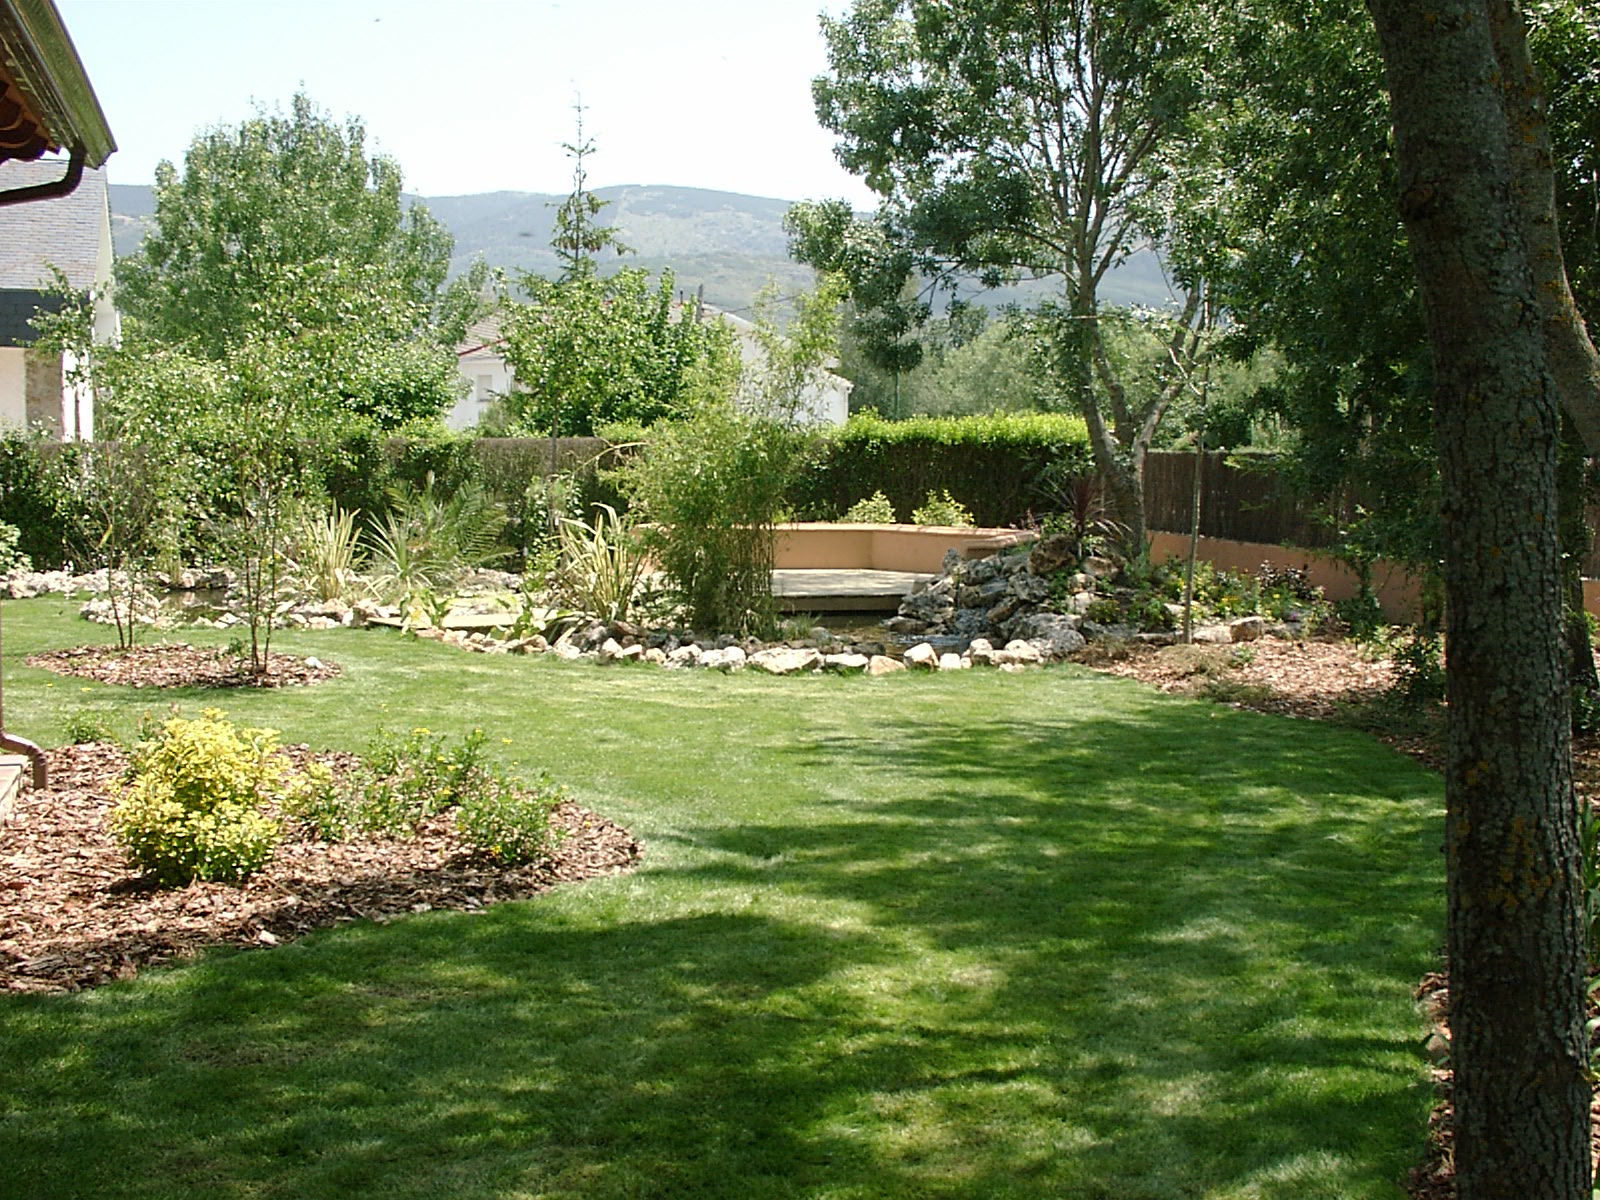 Jardín privado con estanque en El Espinar (Segovia) - Hispania Verde